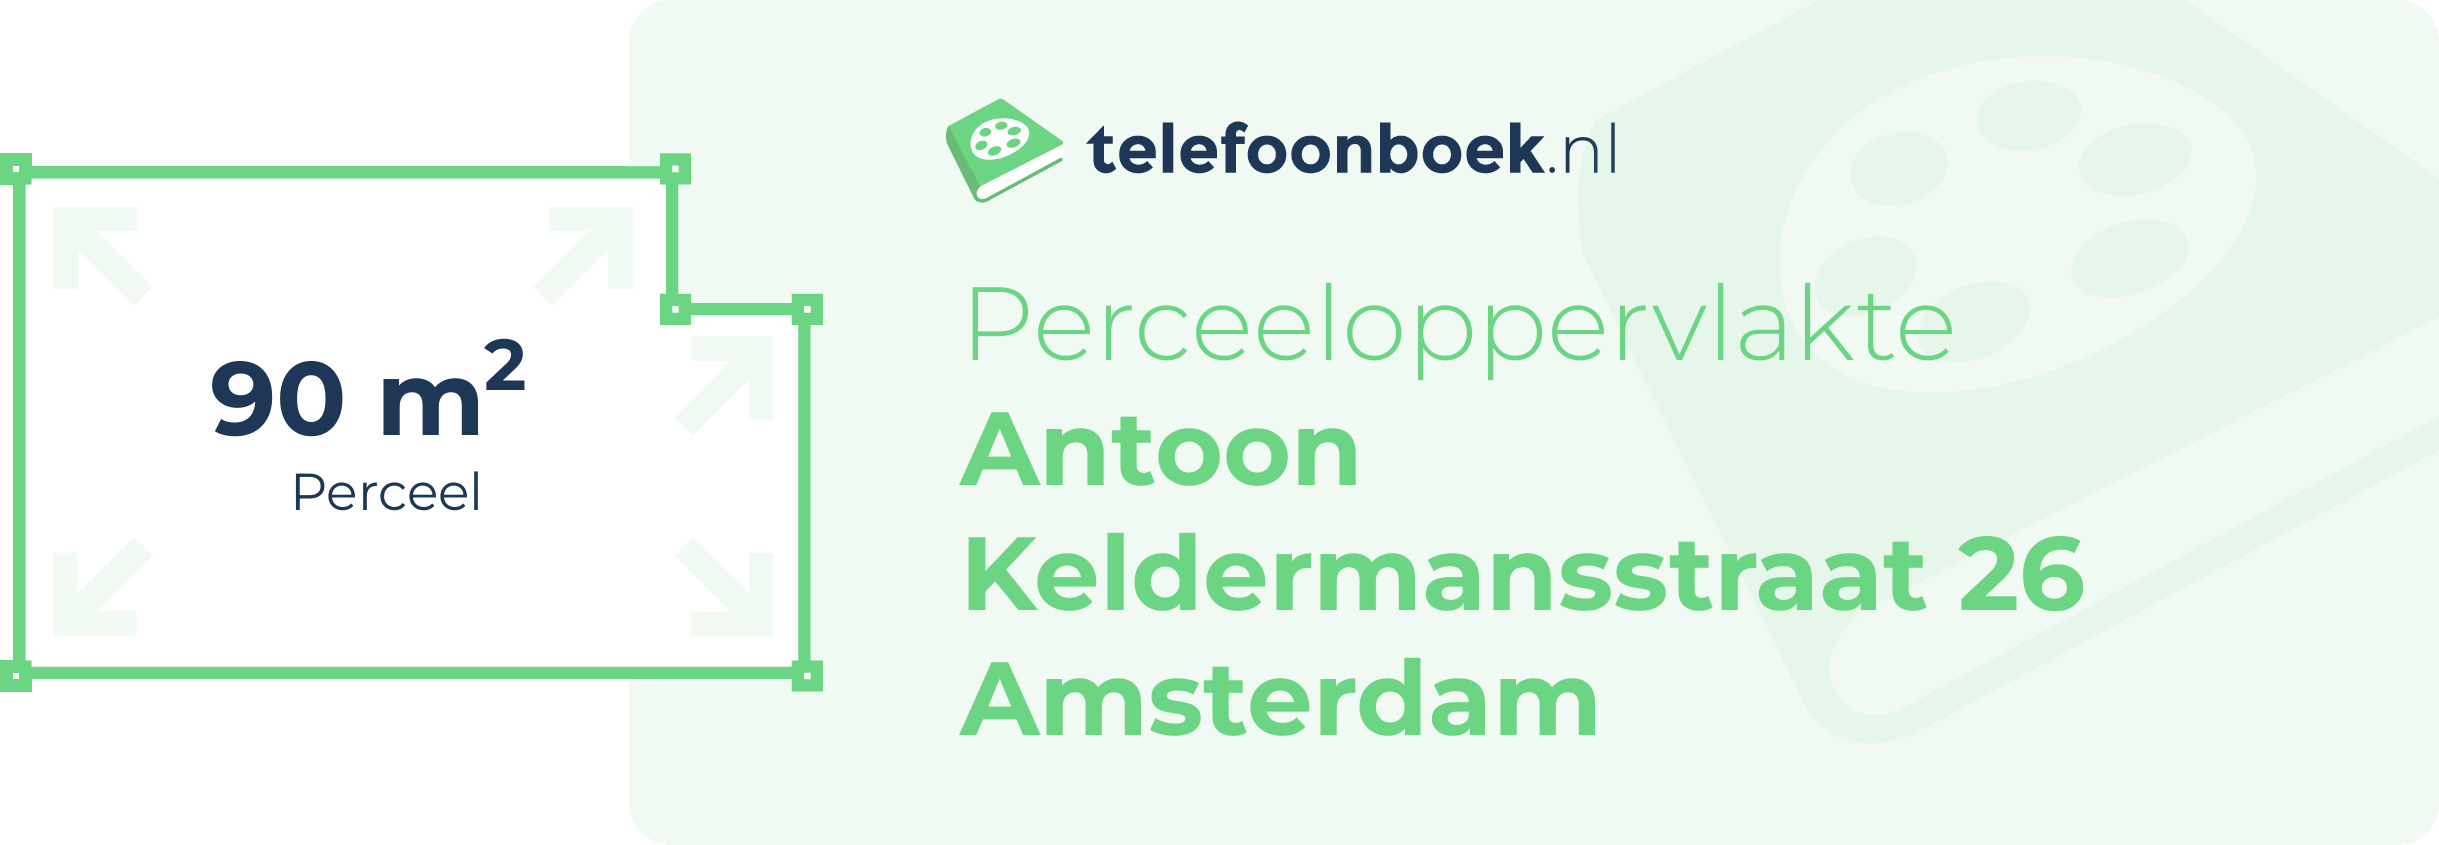 Perceeloppervlakte Antoon Keldermansstraat 26 Amsterdam